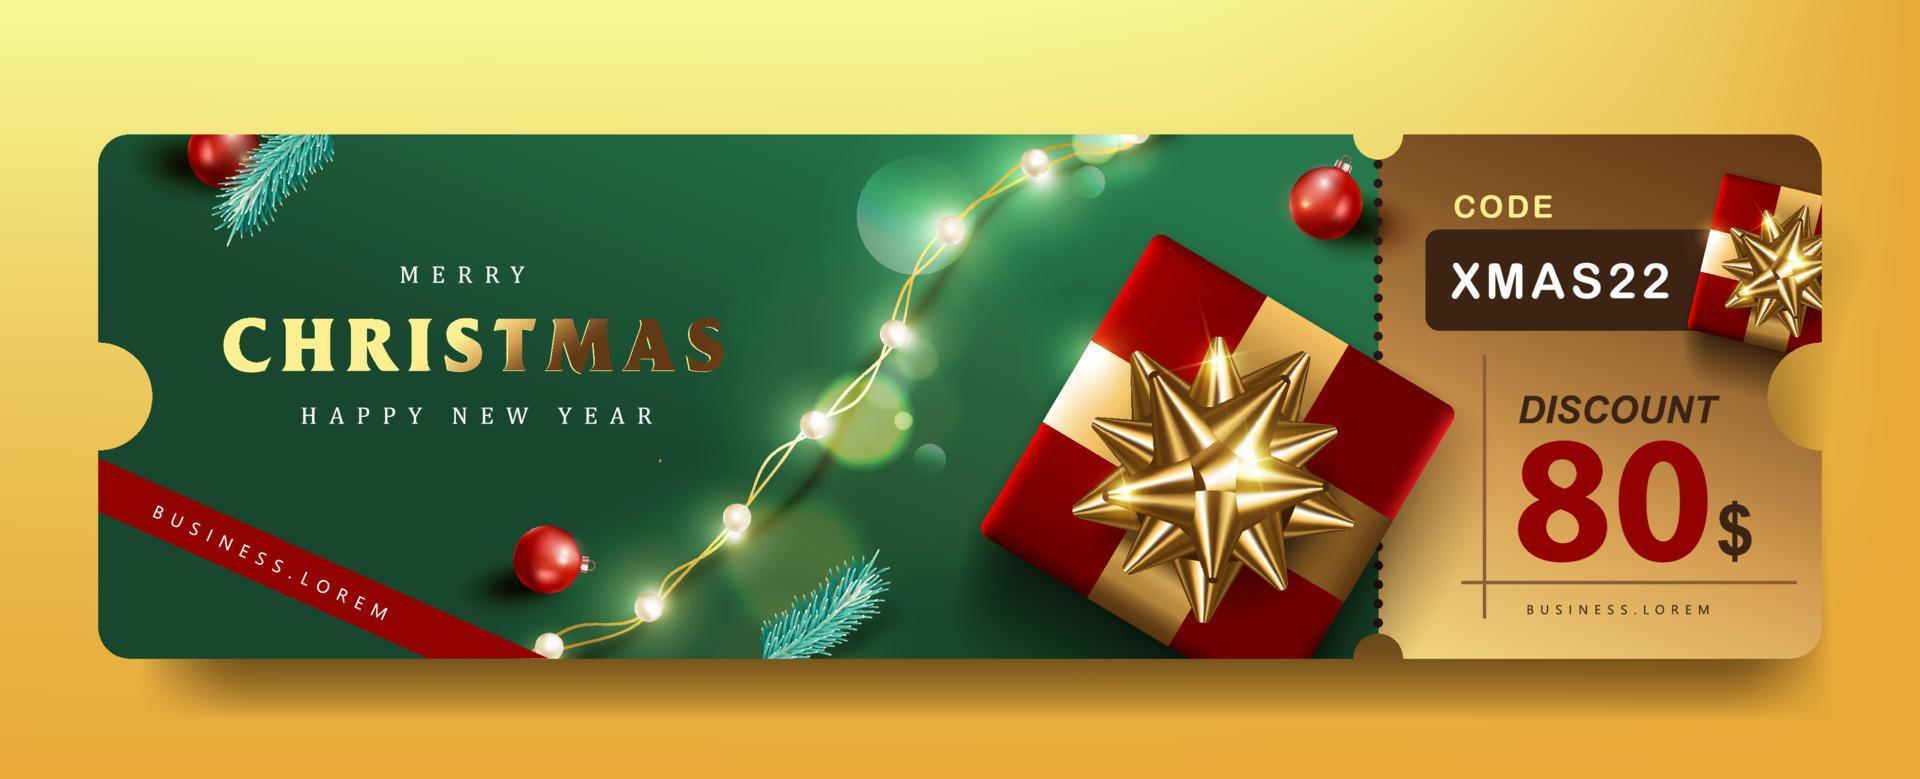 banner coupon promozione regalo di buon natale con decorazione festiva vettore